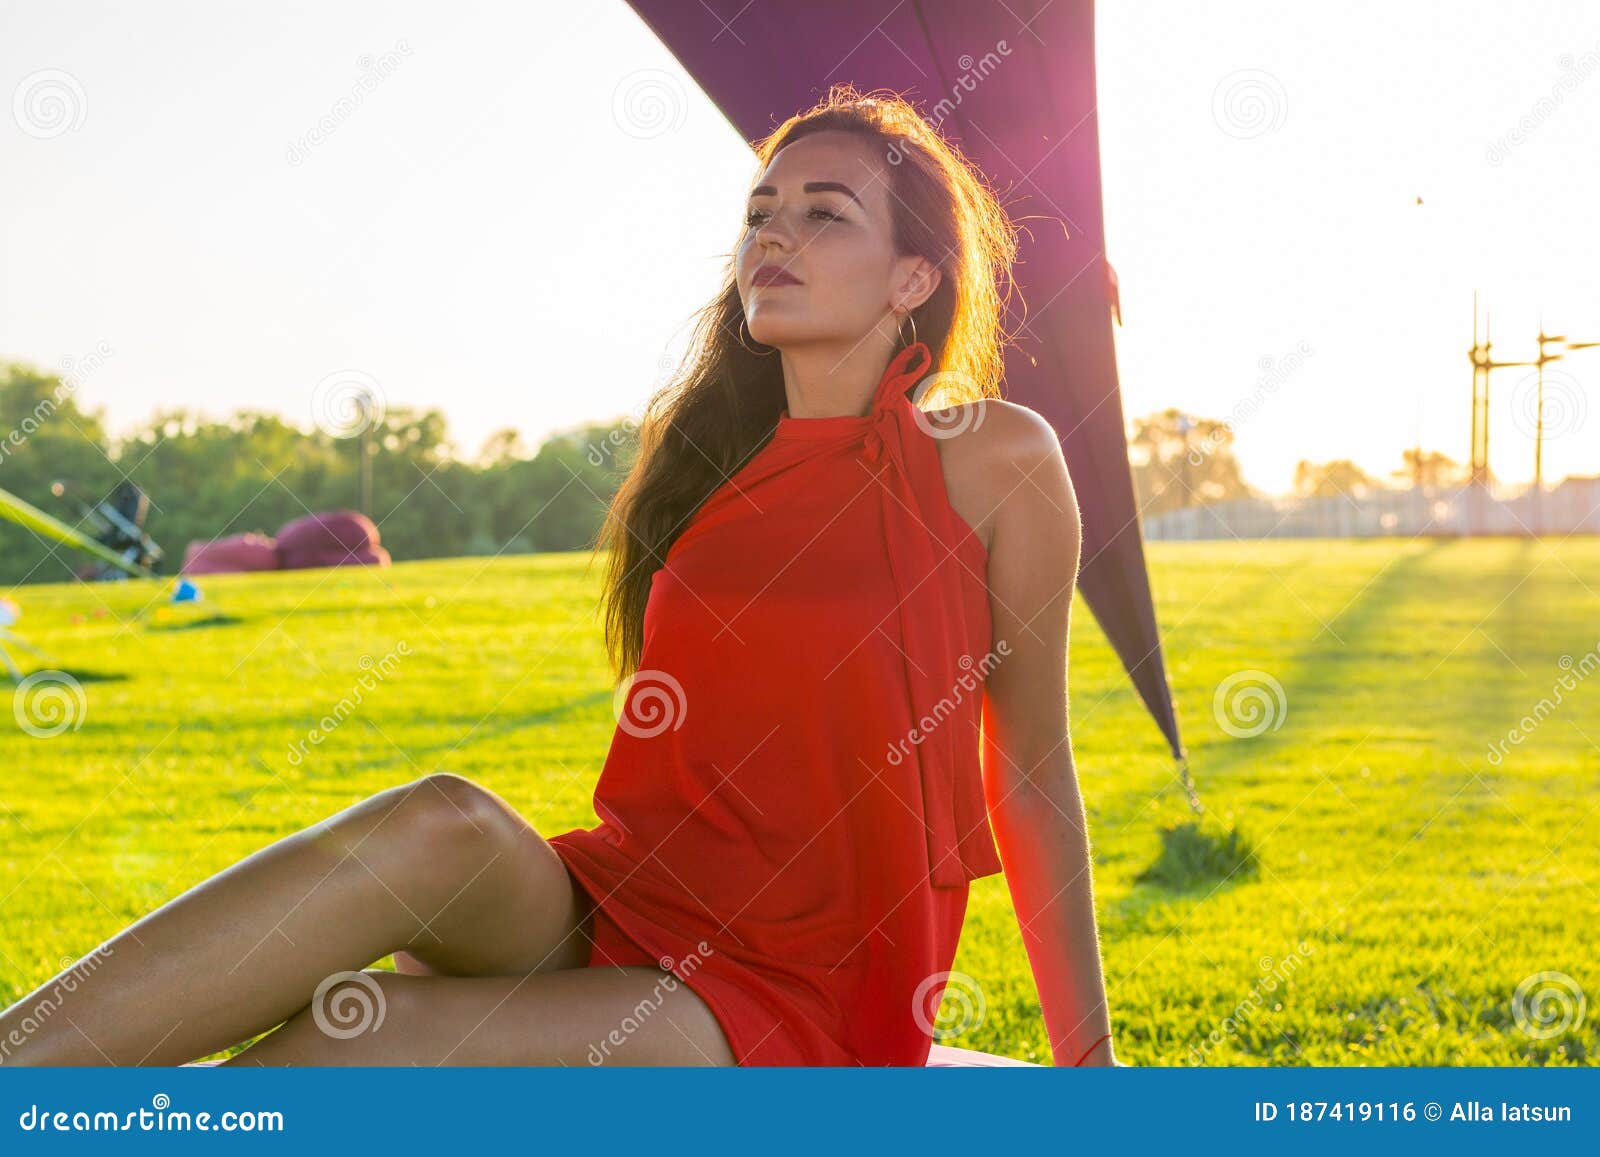 Piękna młoda brunetka z długimi włosami w czerwonej sukience na lounger w obszarze rekreacyjnym z namiotami o zachodzie słońca